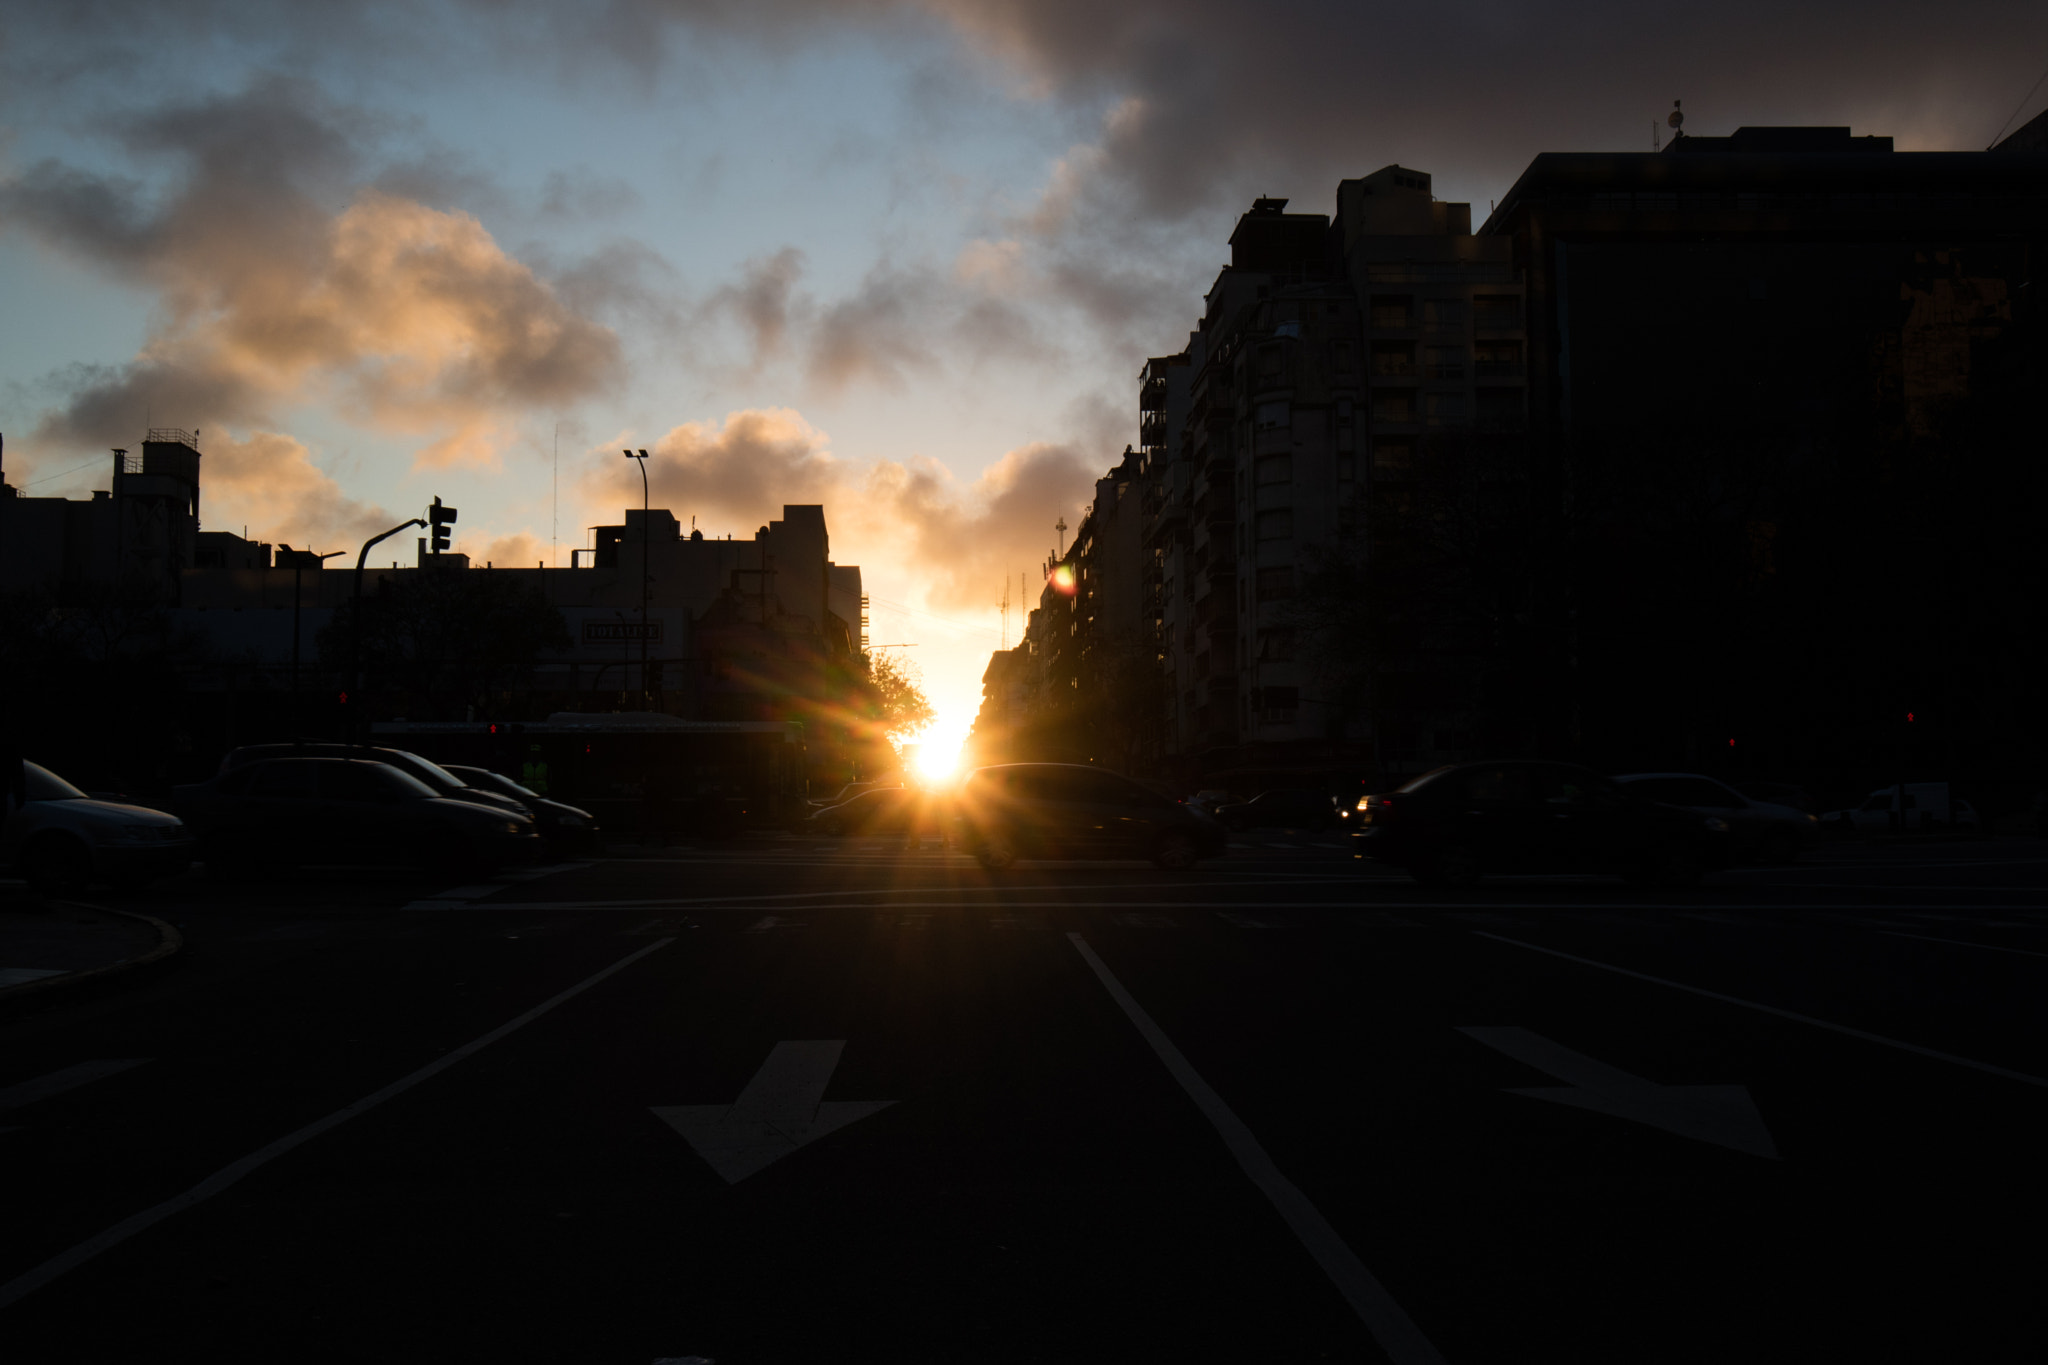 Canon EOS M3 sample photo. Cae el sol sobre la av belgrano.- photography